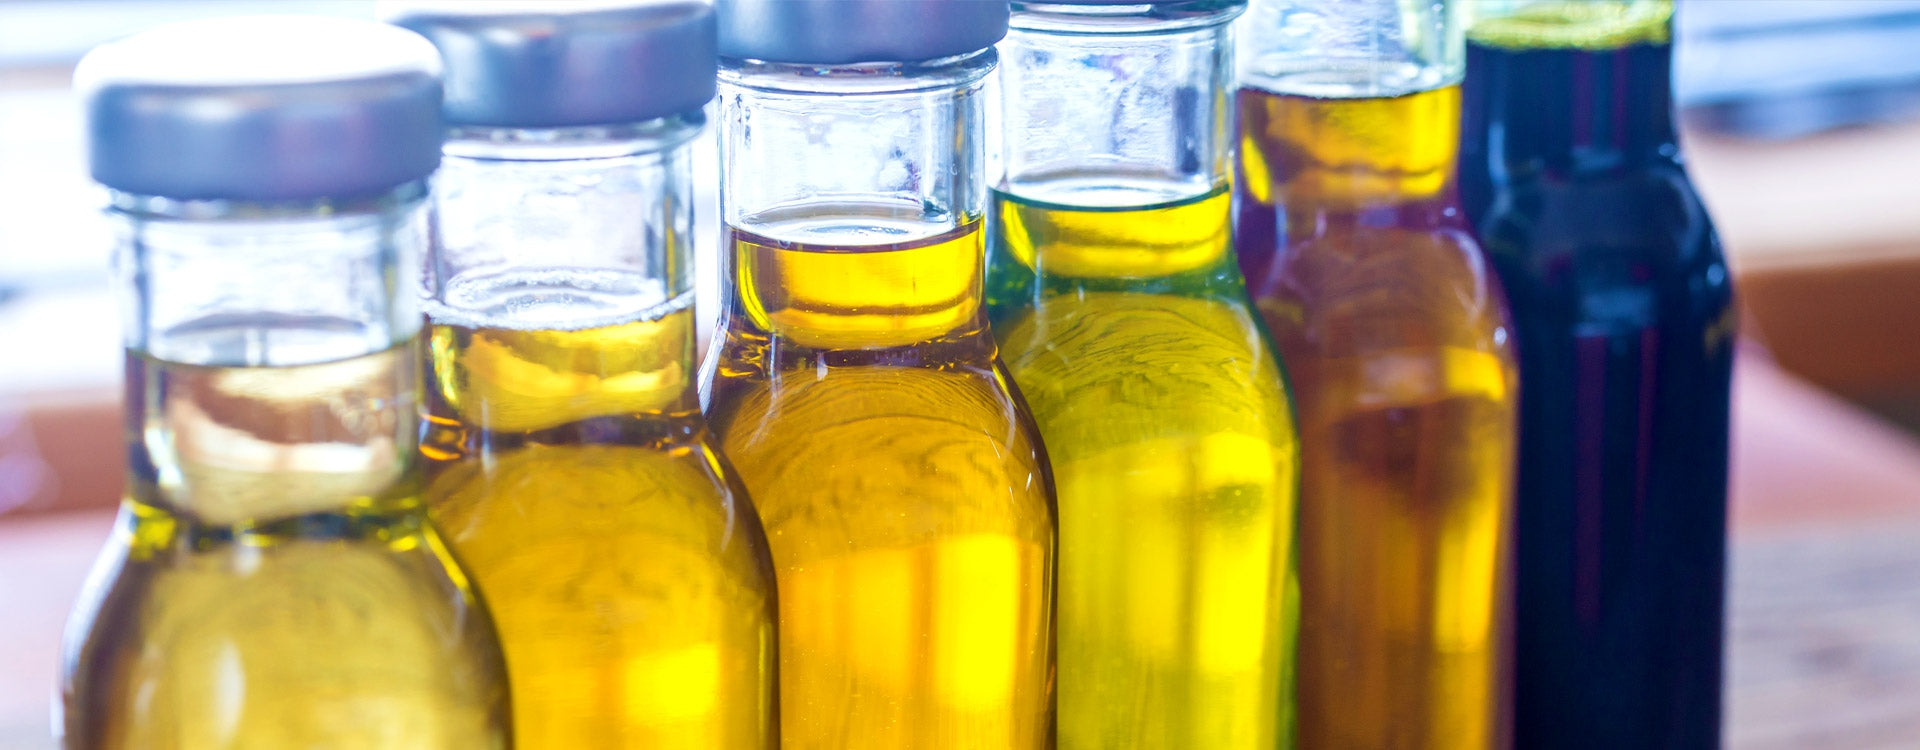 Quelle huile végétale choisir pour diluer l'huile essentielle ?